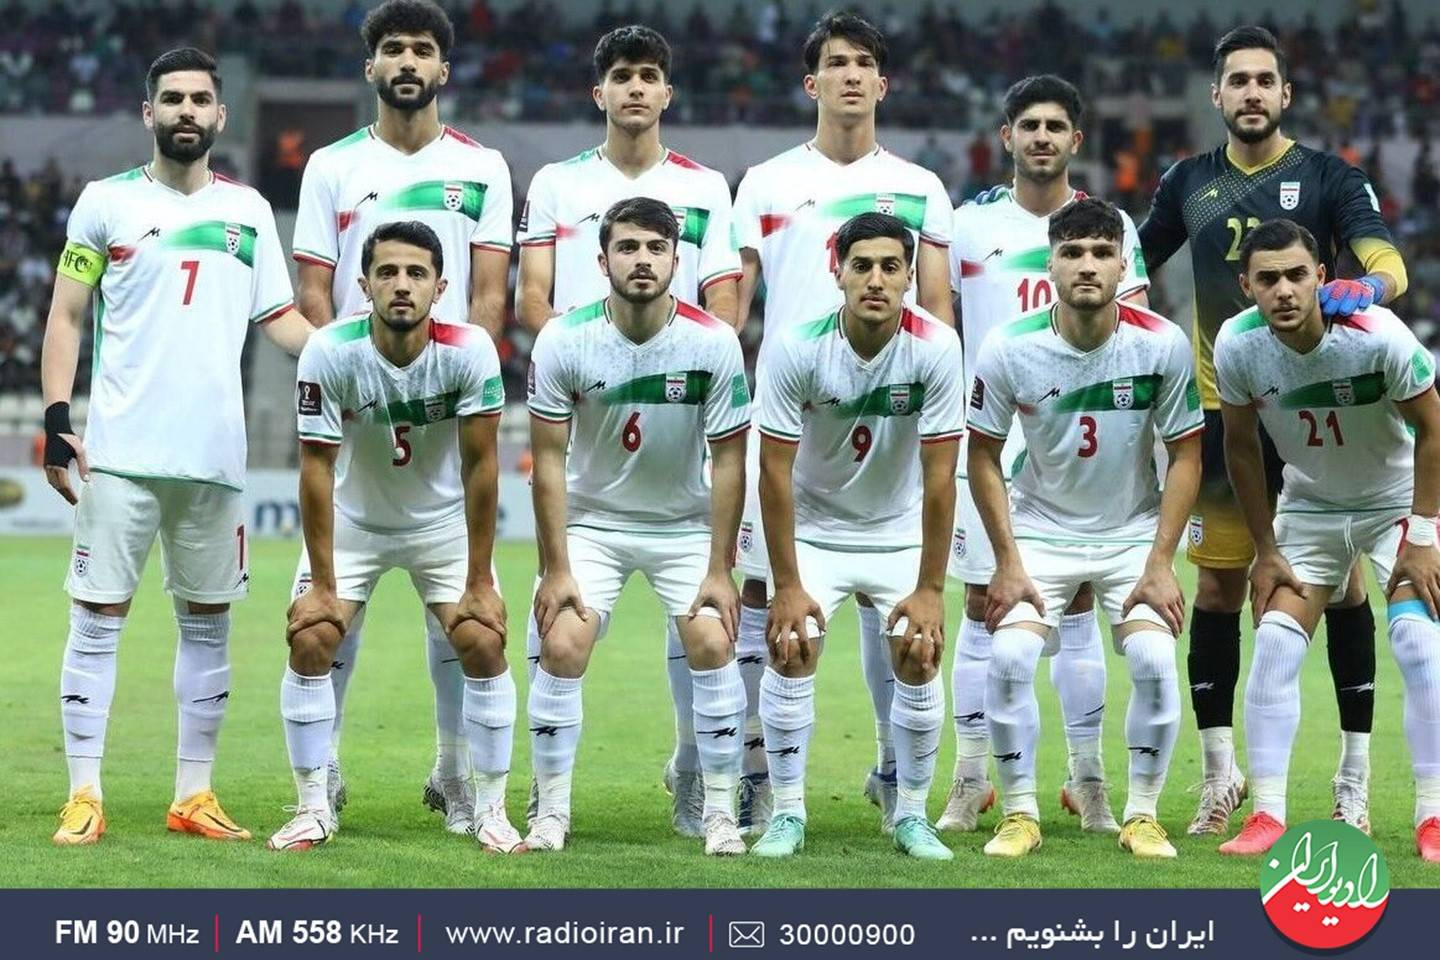 بررسی وضعیت سرمربیگری تیم ملی فوتبال امید در رادیو ایران